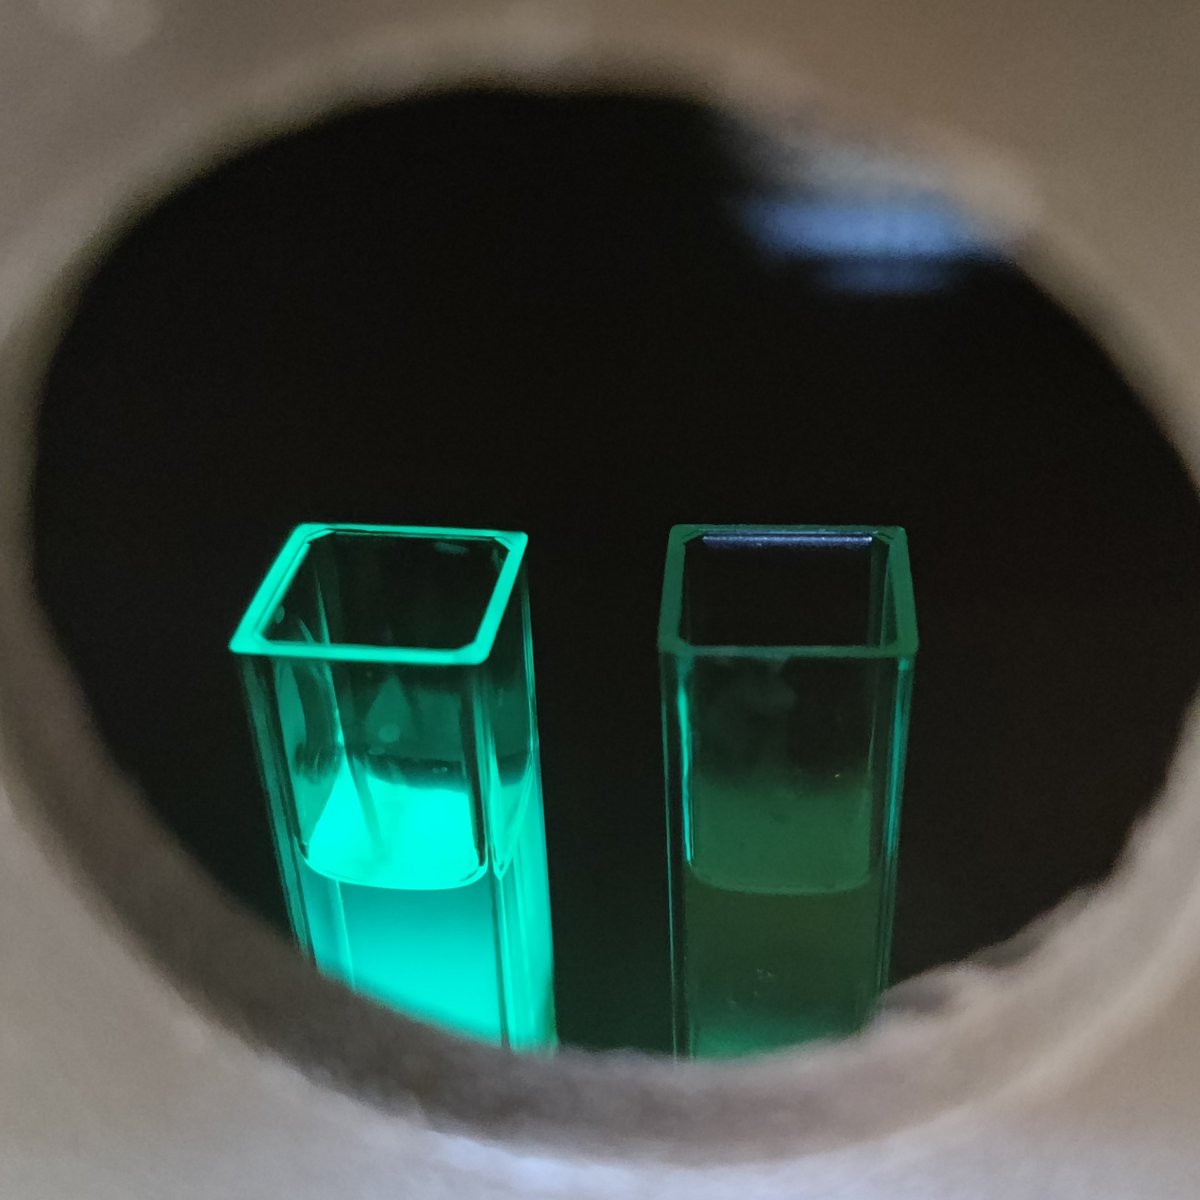 Billede af to væsker, som ses gennem et hul i en kasse. Den ene væske lyser op pga. luminescens.